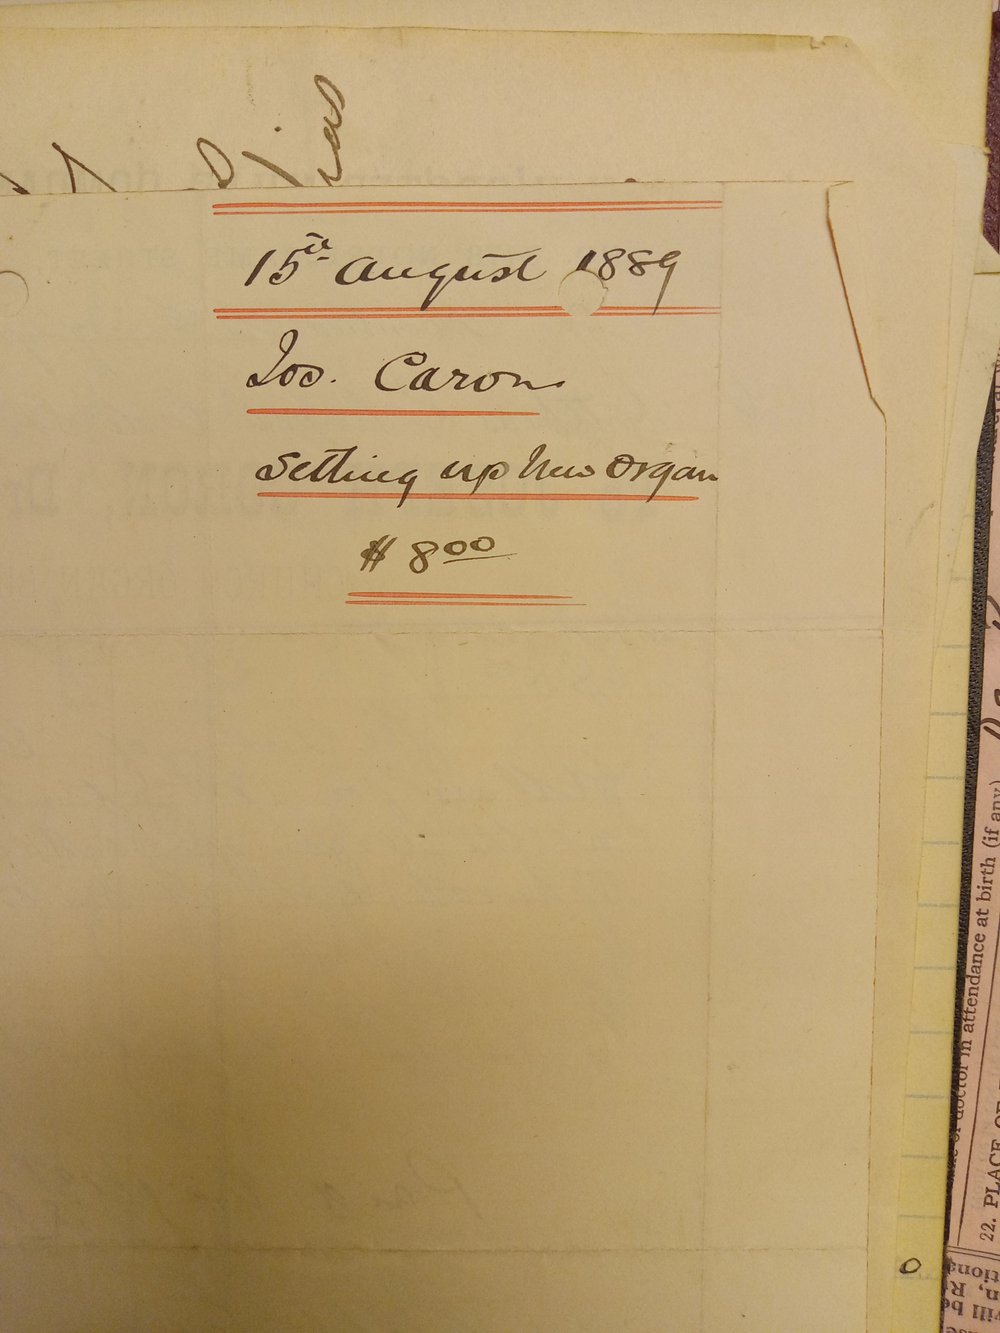 1889 Organ Building Bill.jpg